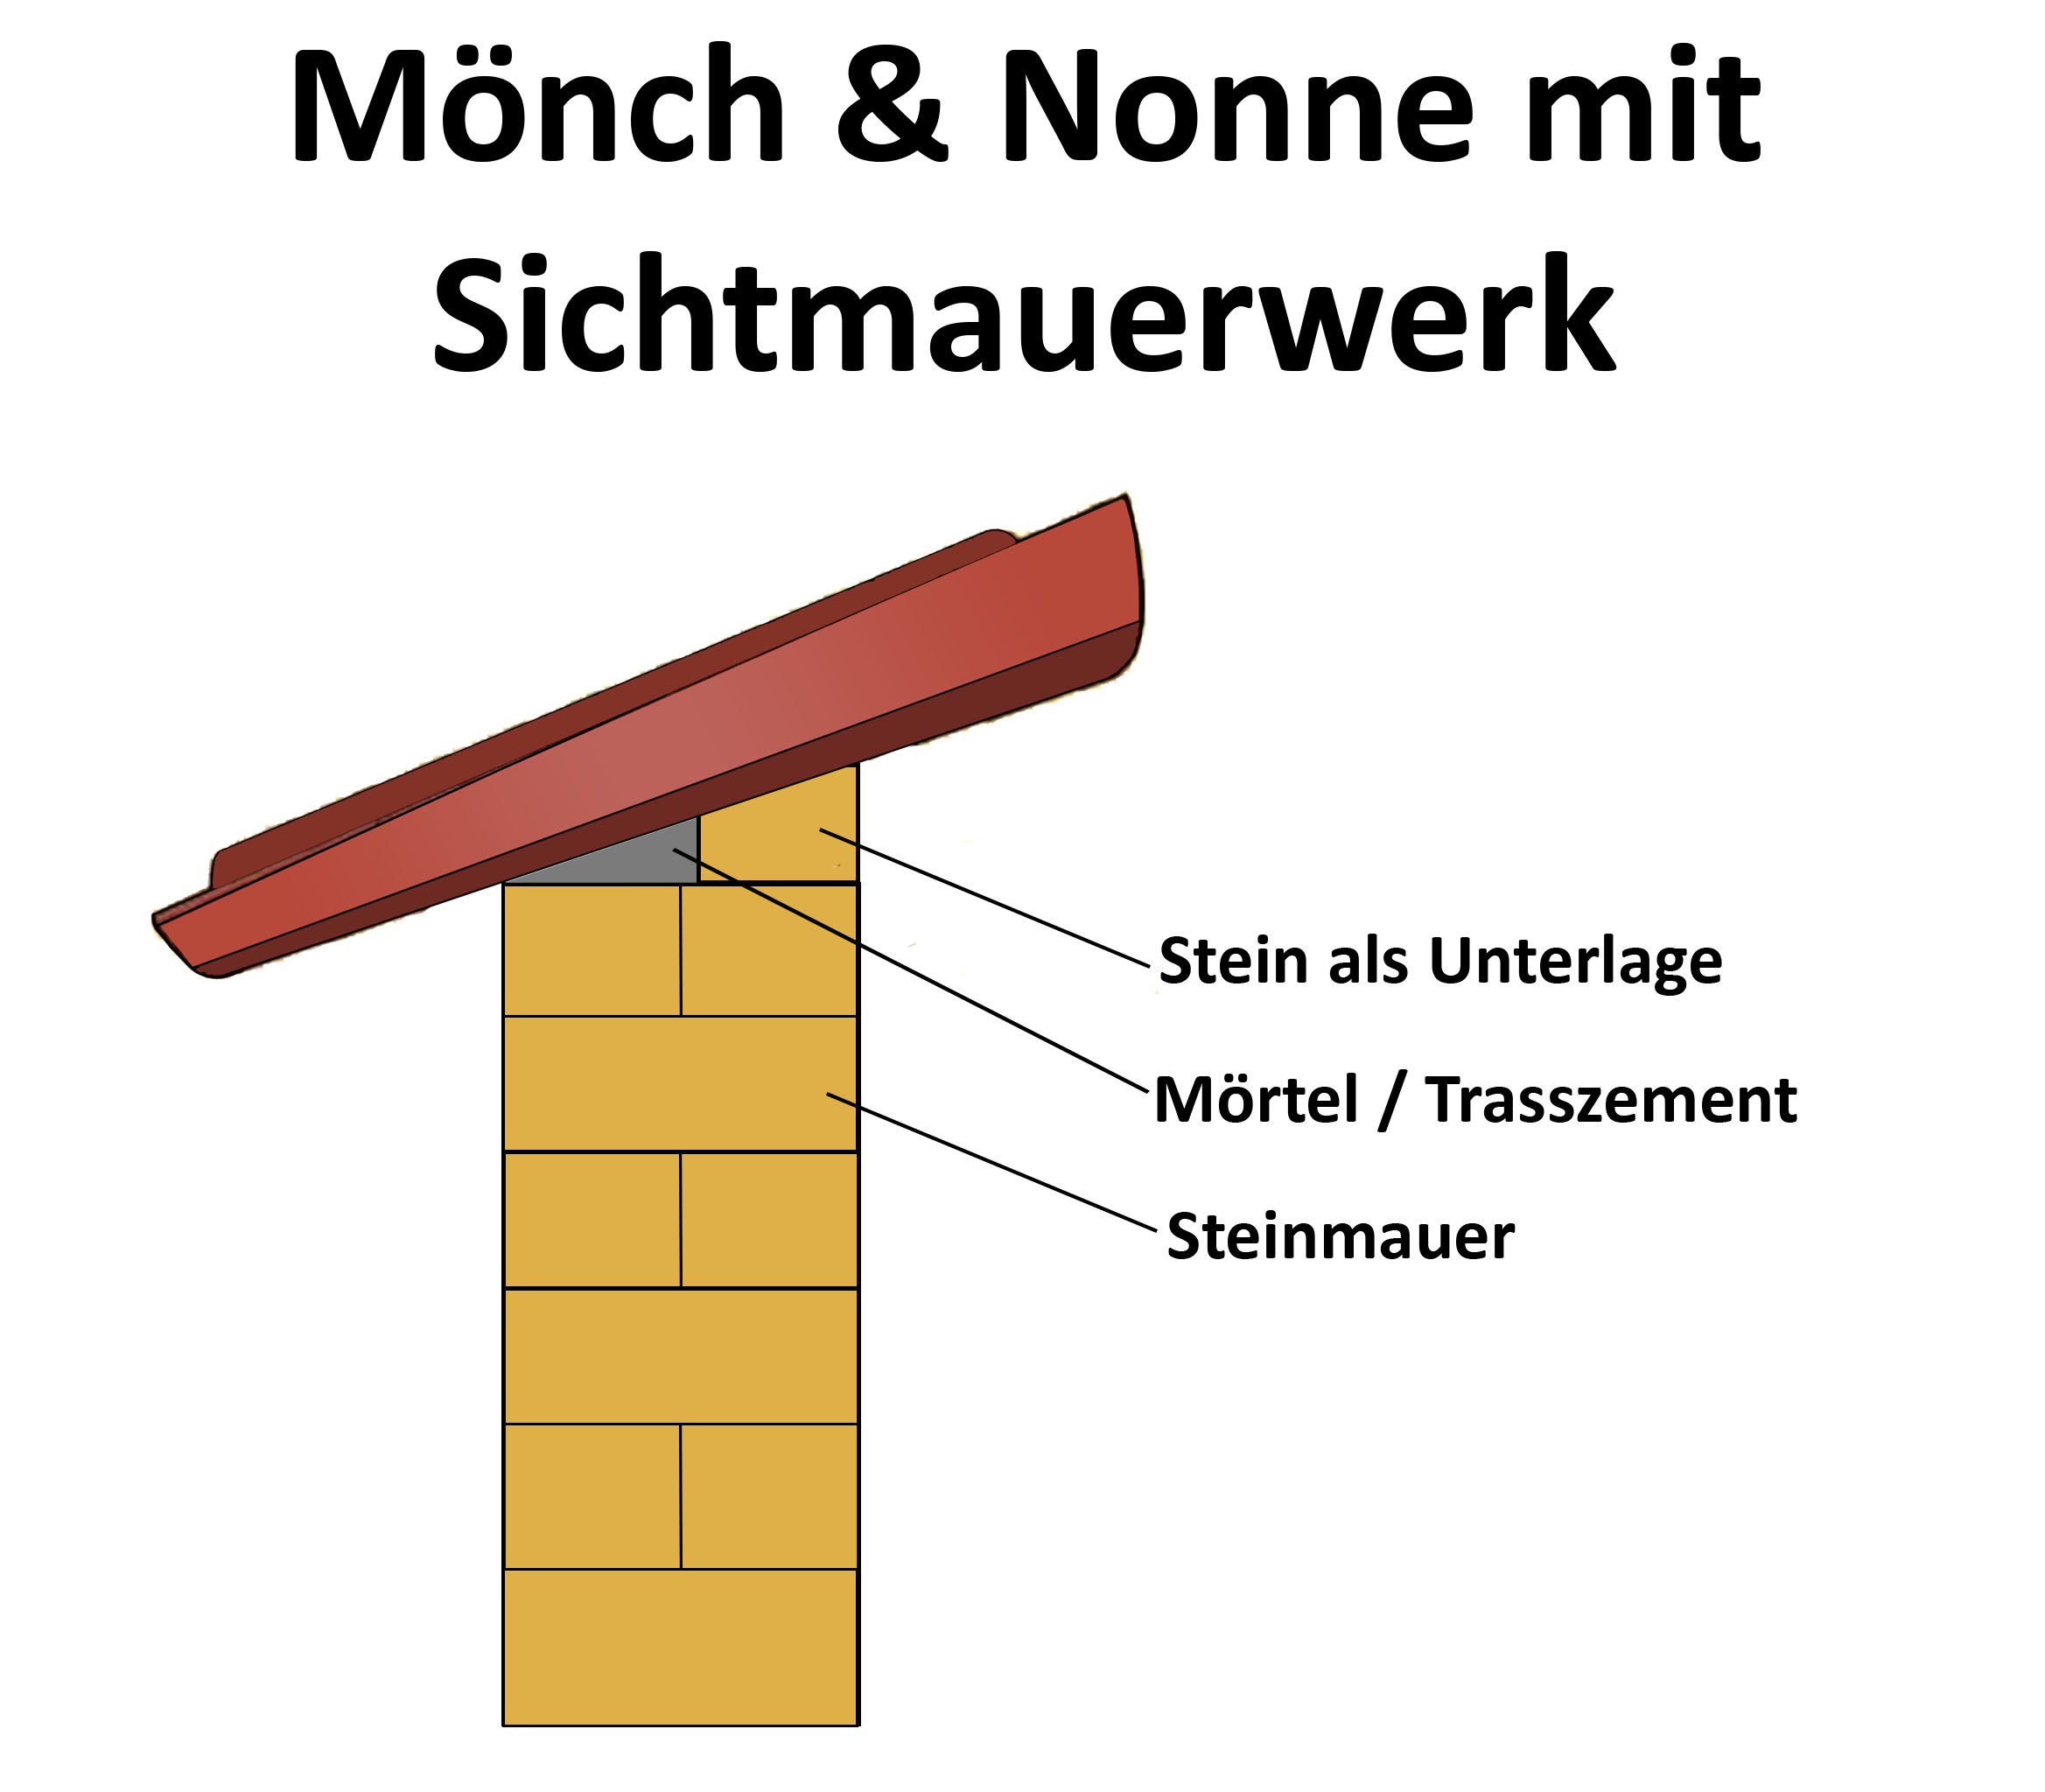 Mönch Nonne - Sichtmauerwerk